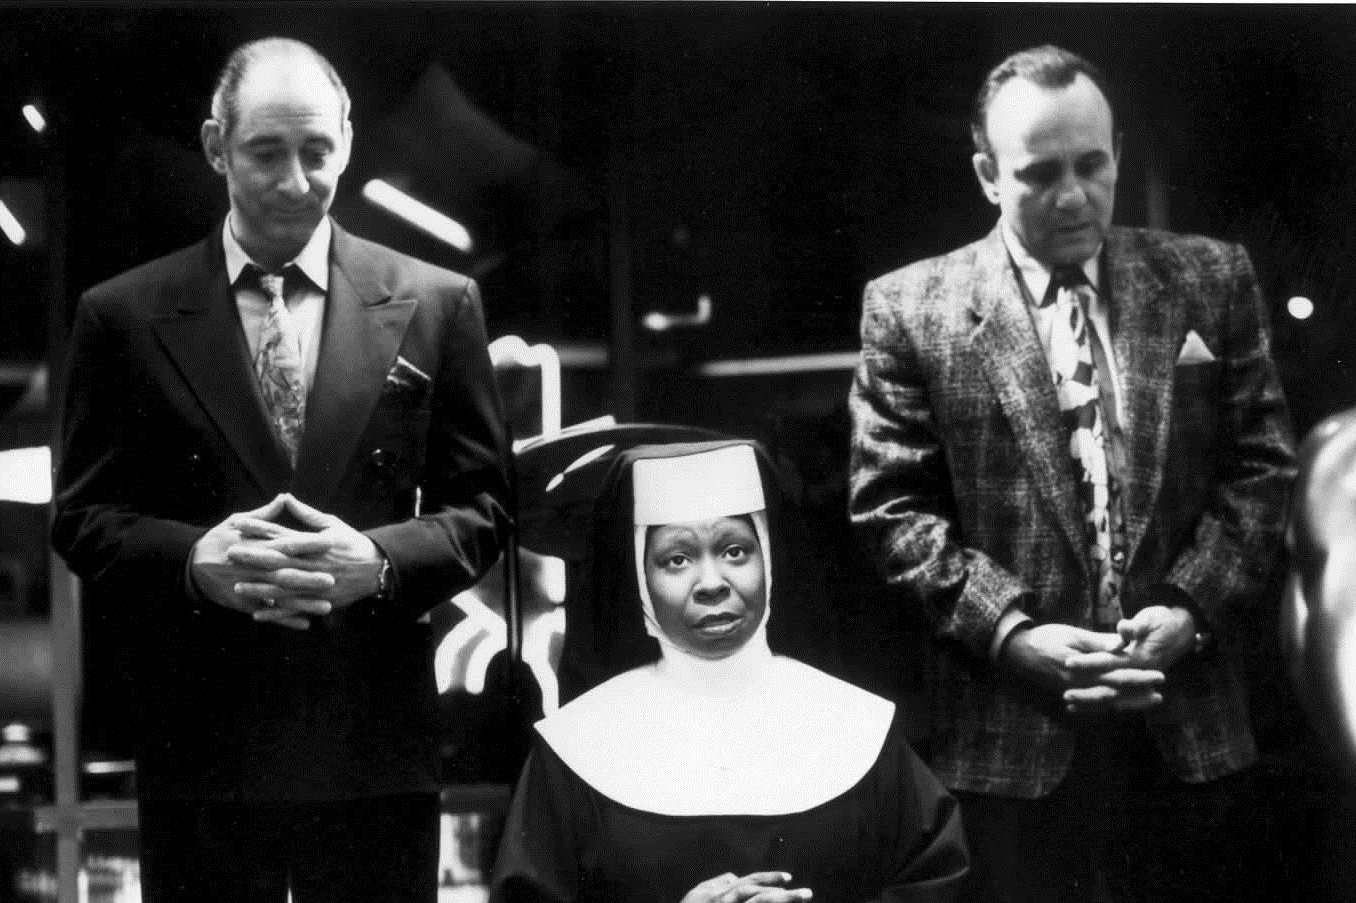 Whoppi Goldberg in the 1982 film Sister Act